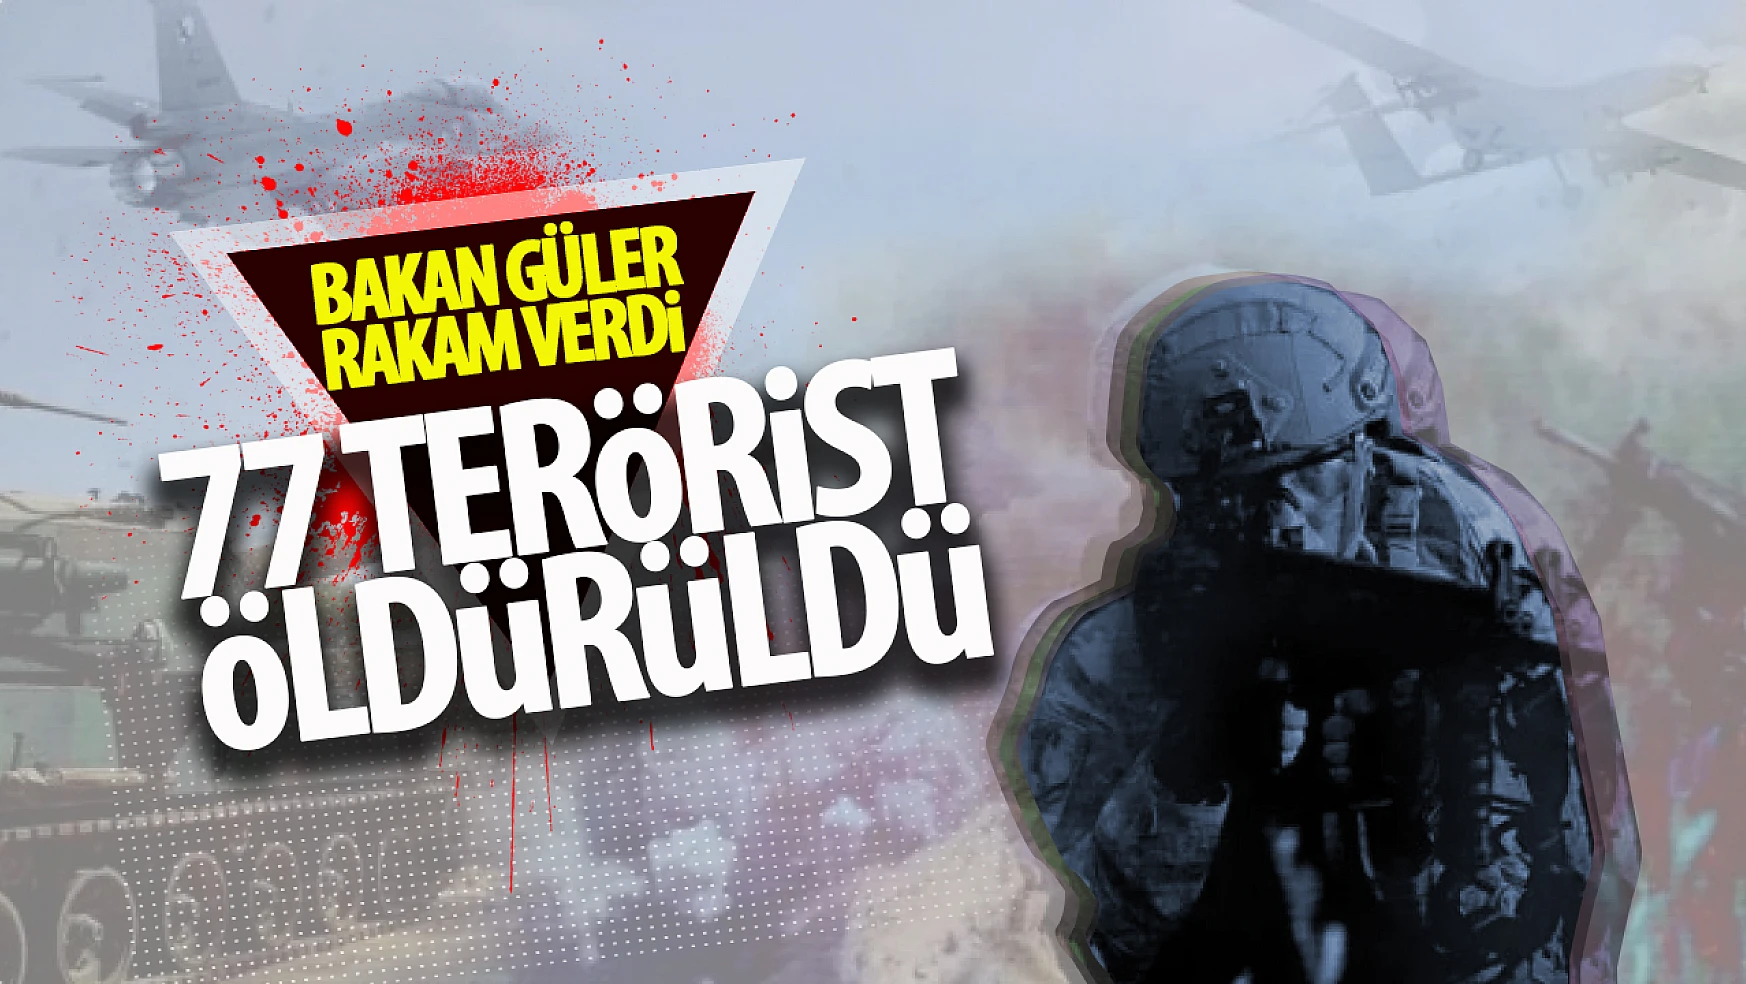 Leş sayısı 77...   Bakan Güler açıkladı! 77 terörist öldürüldü